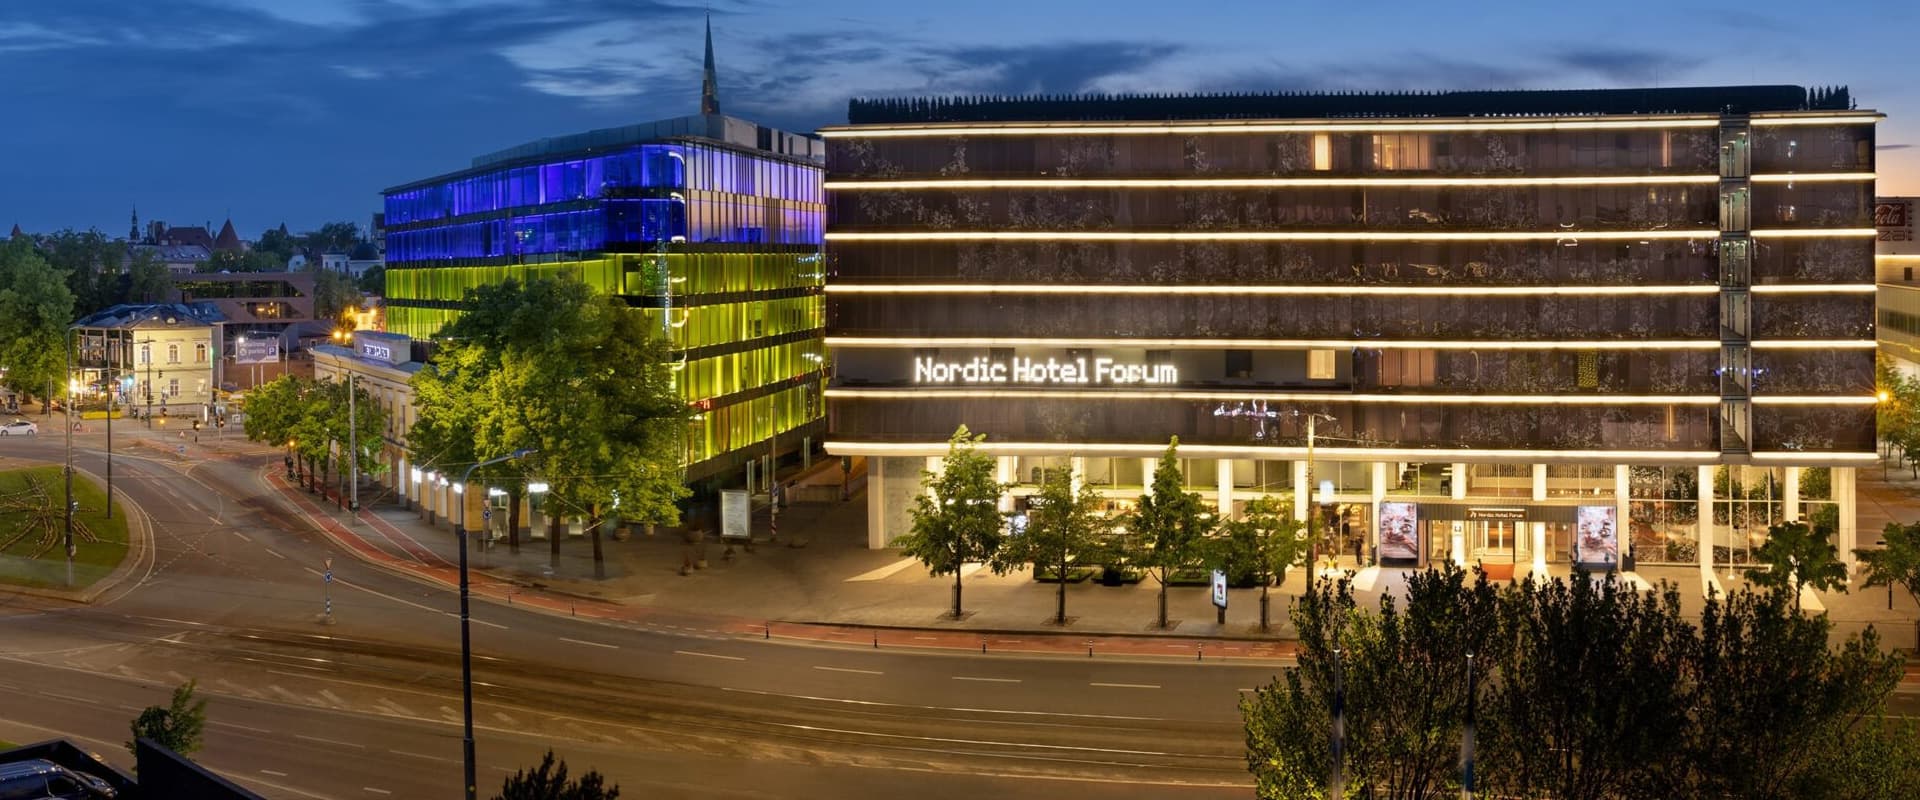 Nordic Hotel Forum - Hotell Tallinna kesklinnas